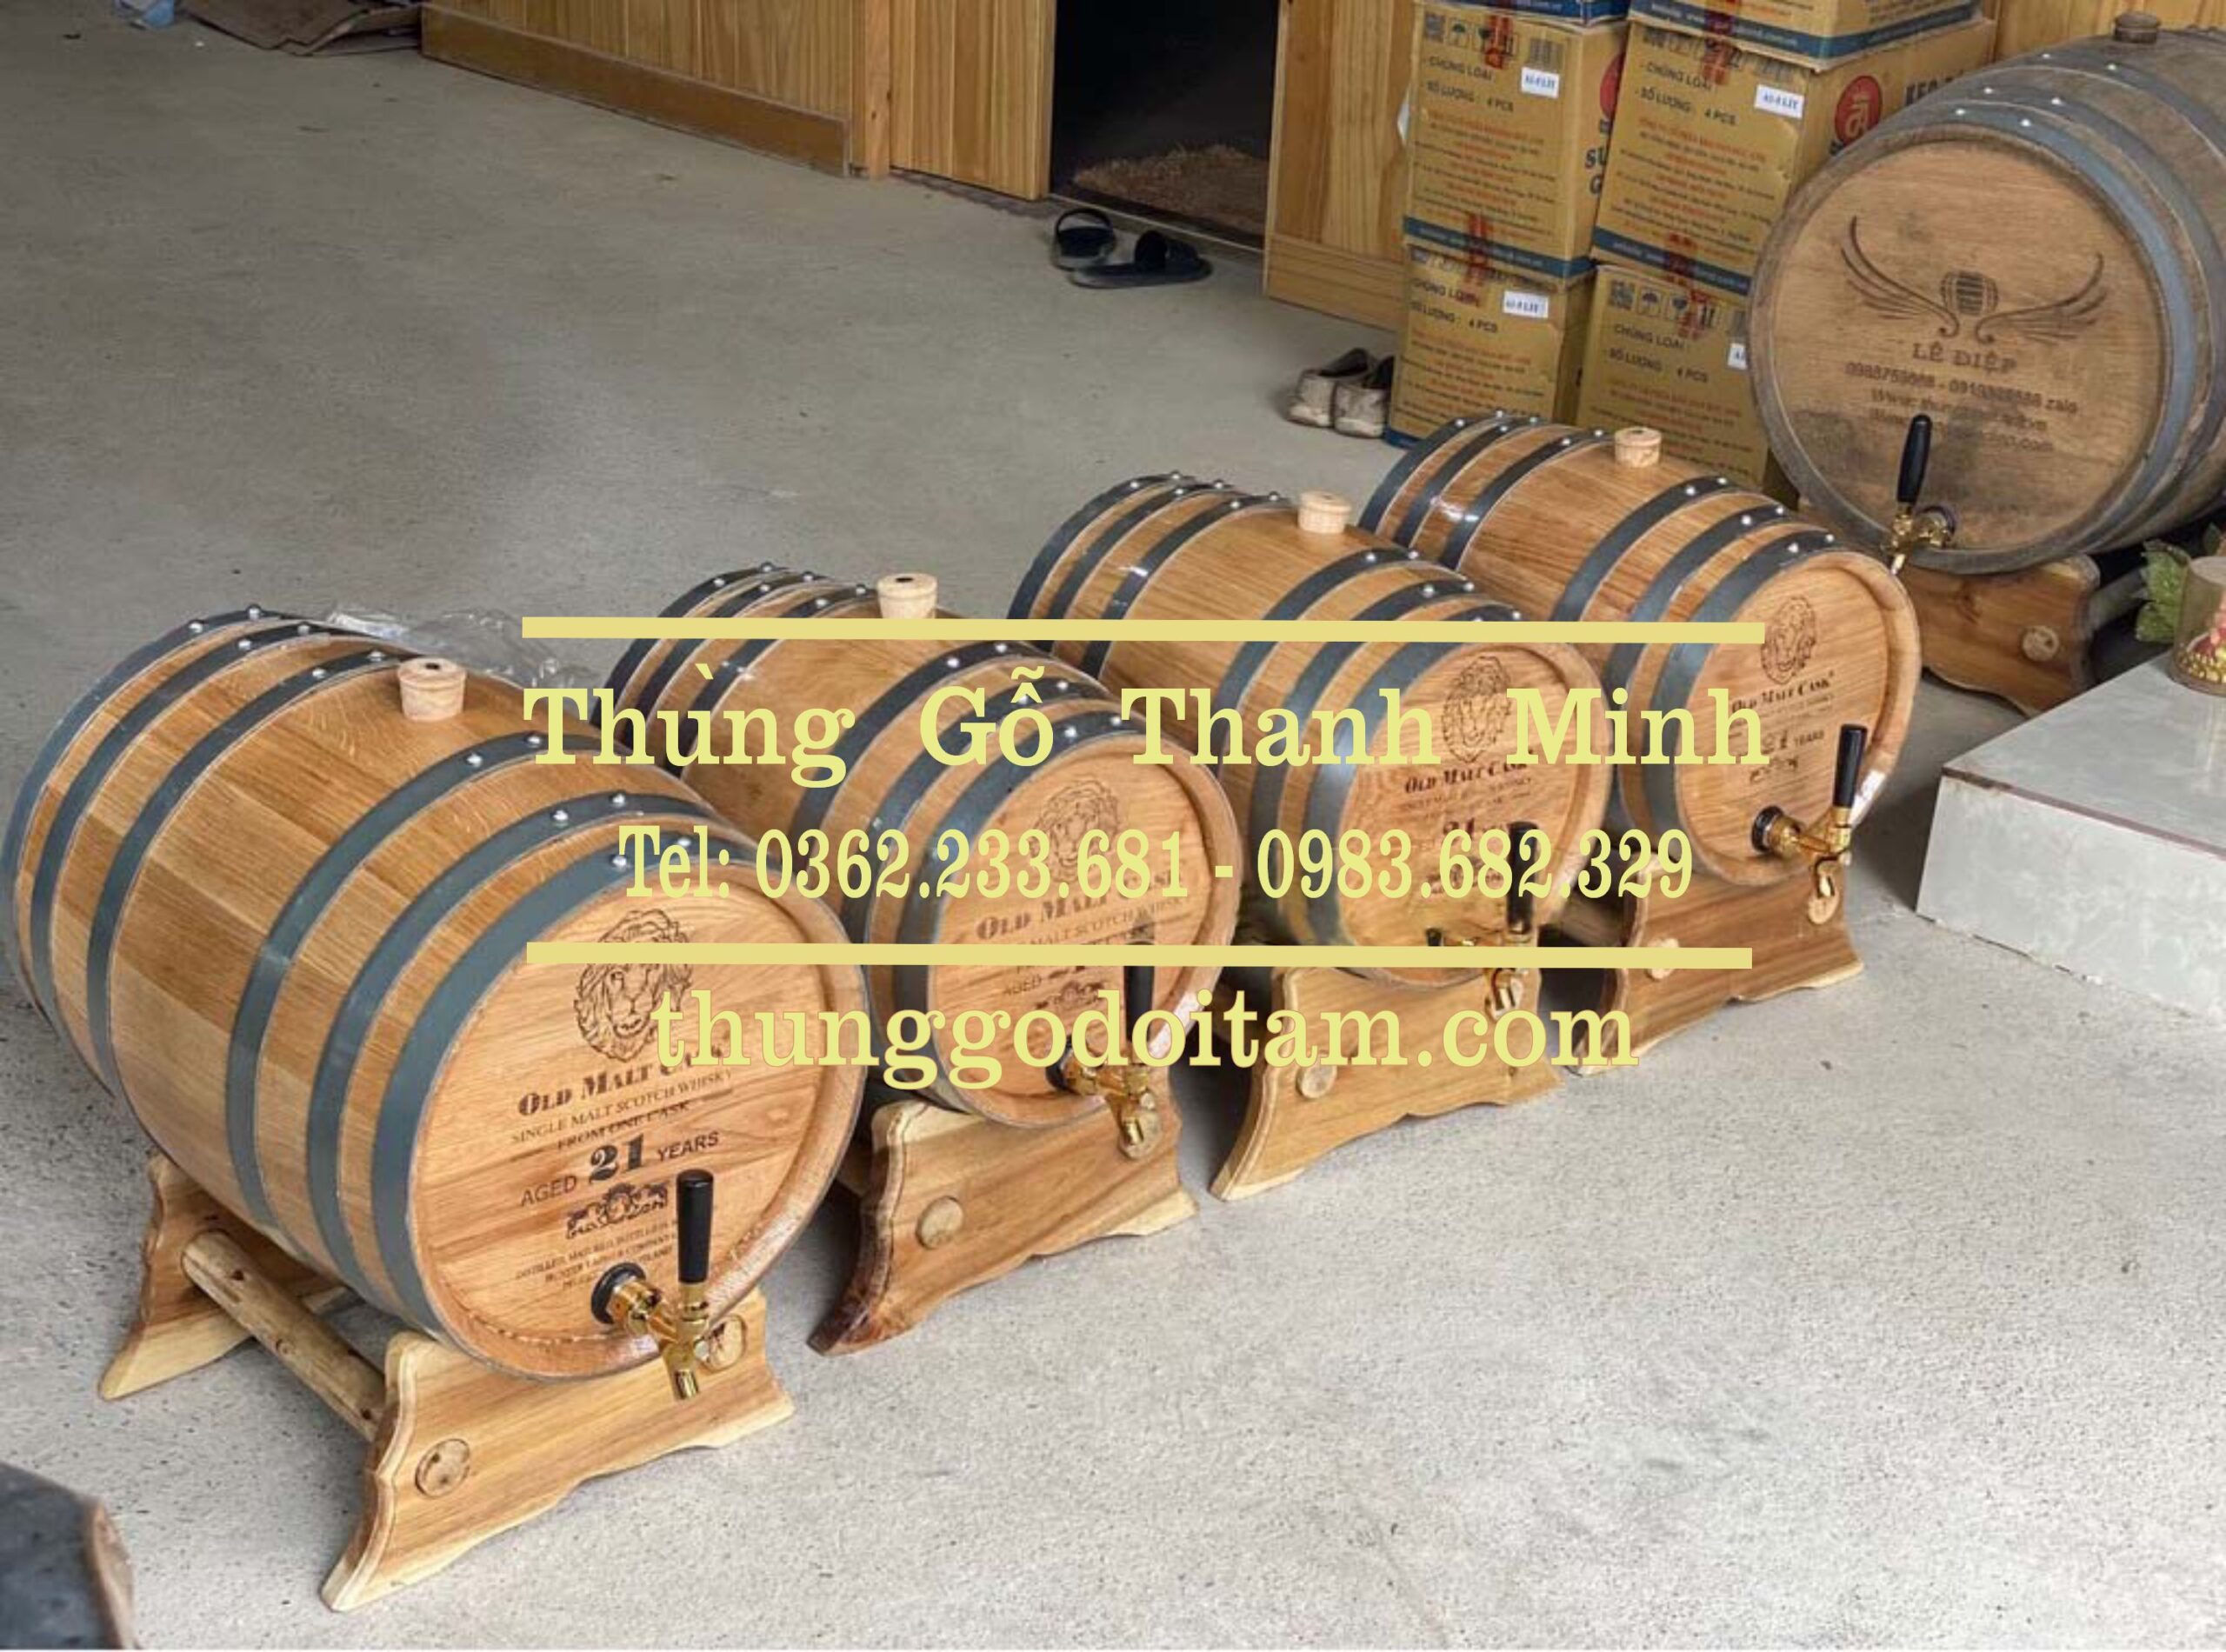 Bình rượu gỗ sồi - Chuẩn chất lượng tốt - Sản xuất trực tiếp - Thanh Minh